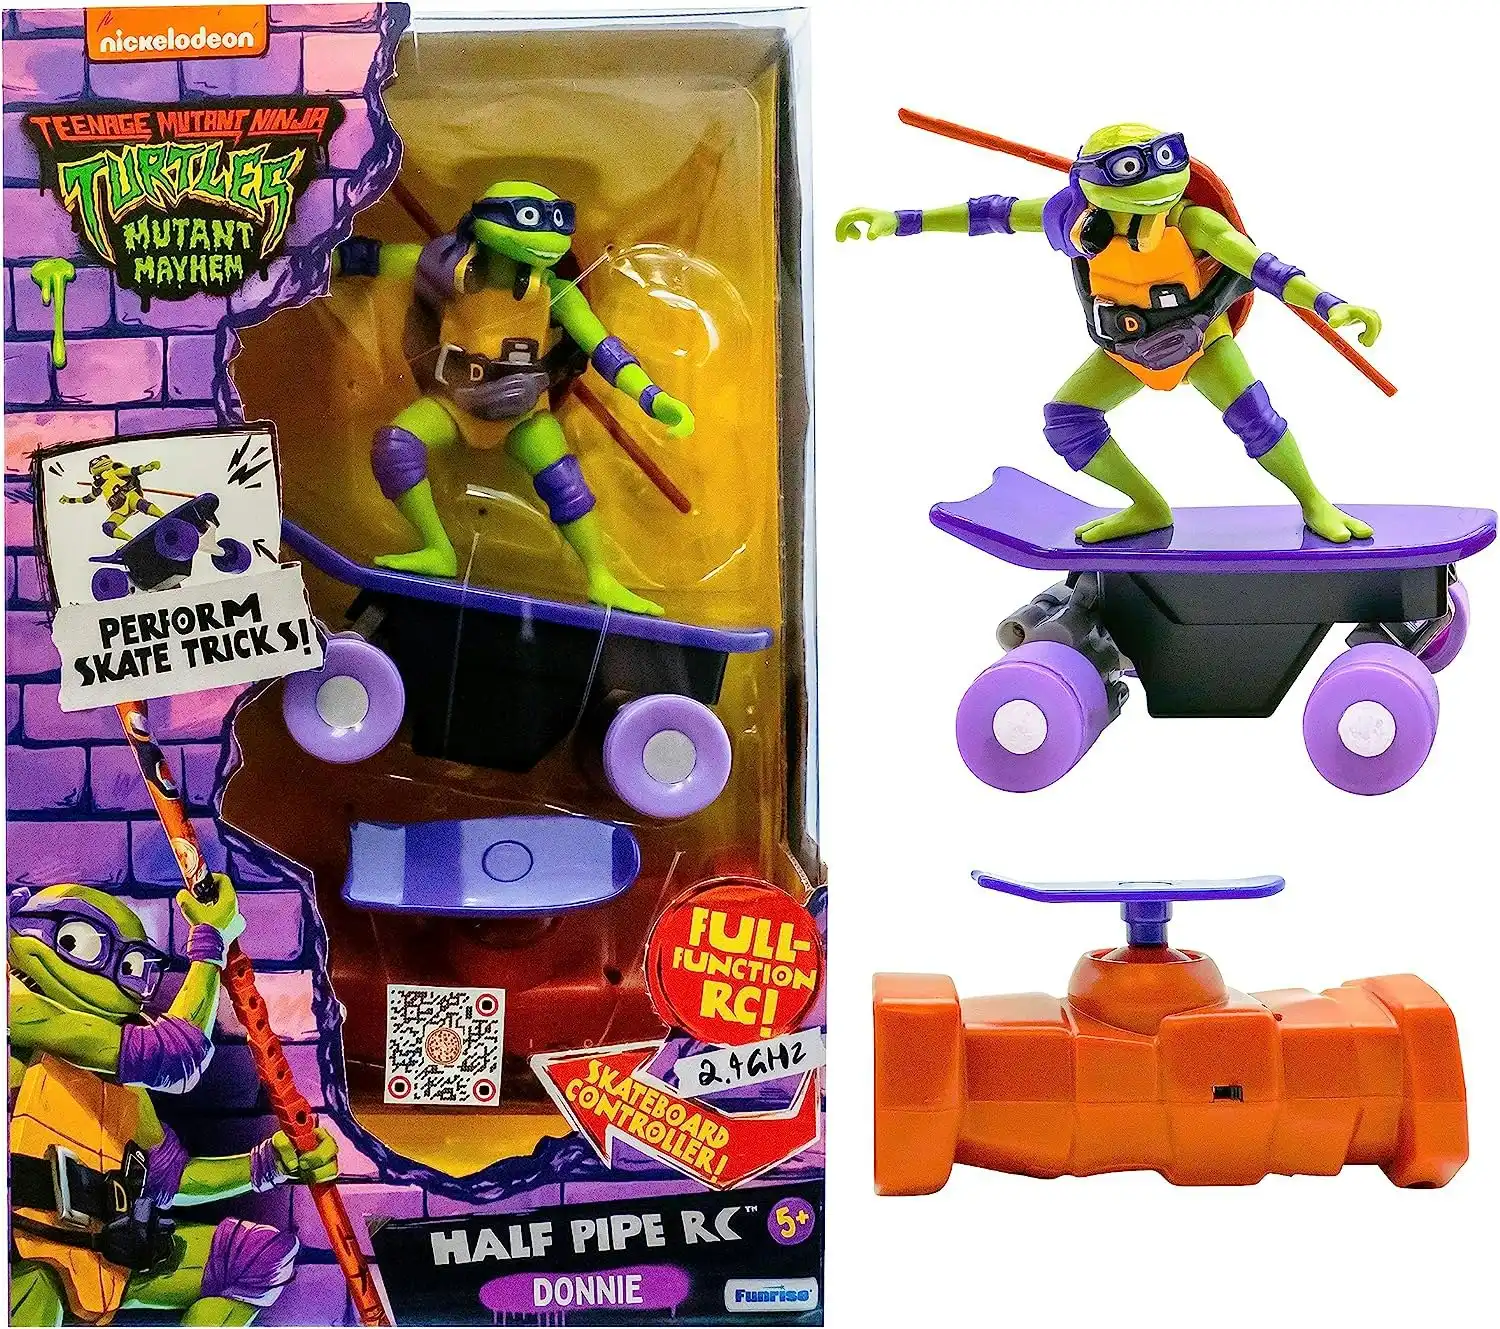 Teenage Mutant Ninja Turtles Half Pipe RC Vehicle - Donatello (Movie)